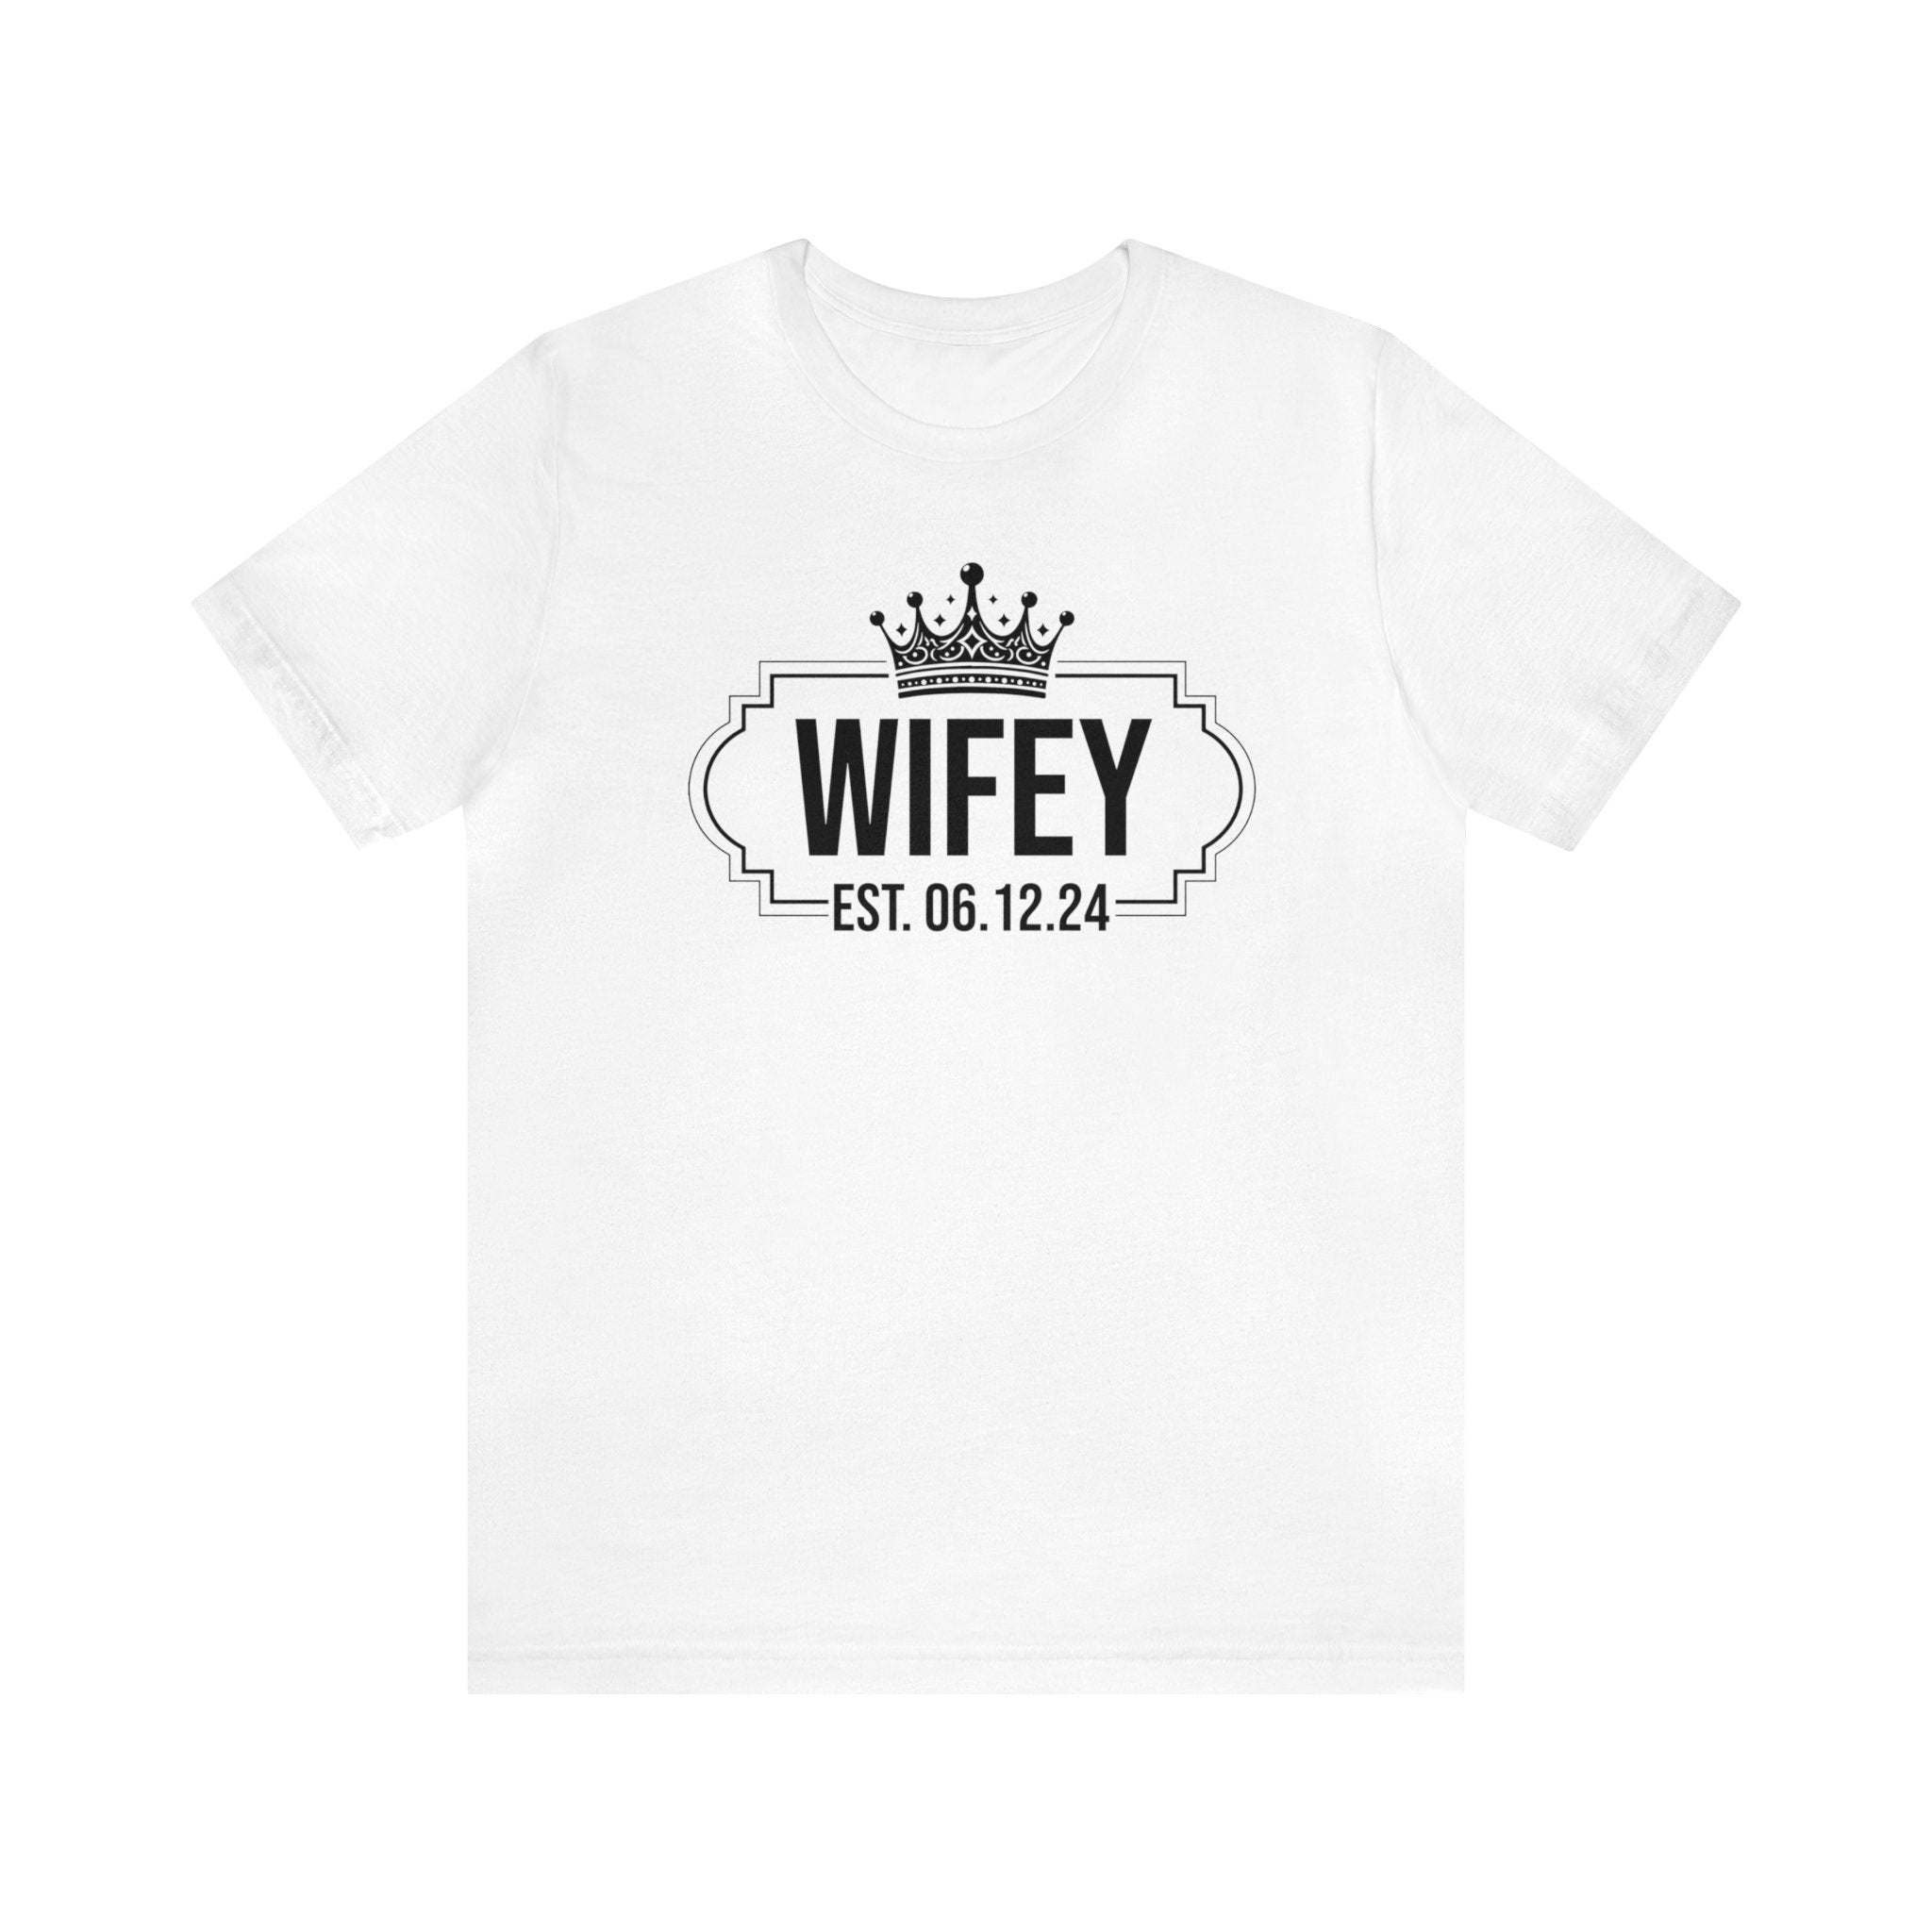 Wifey & Hubby Personalized